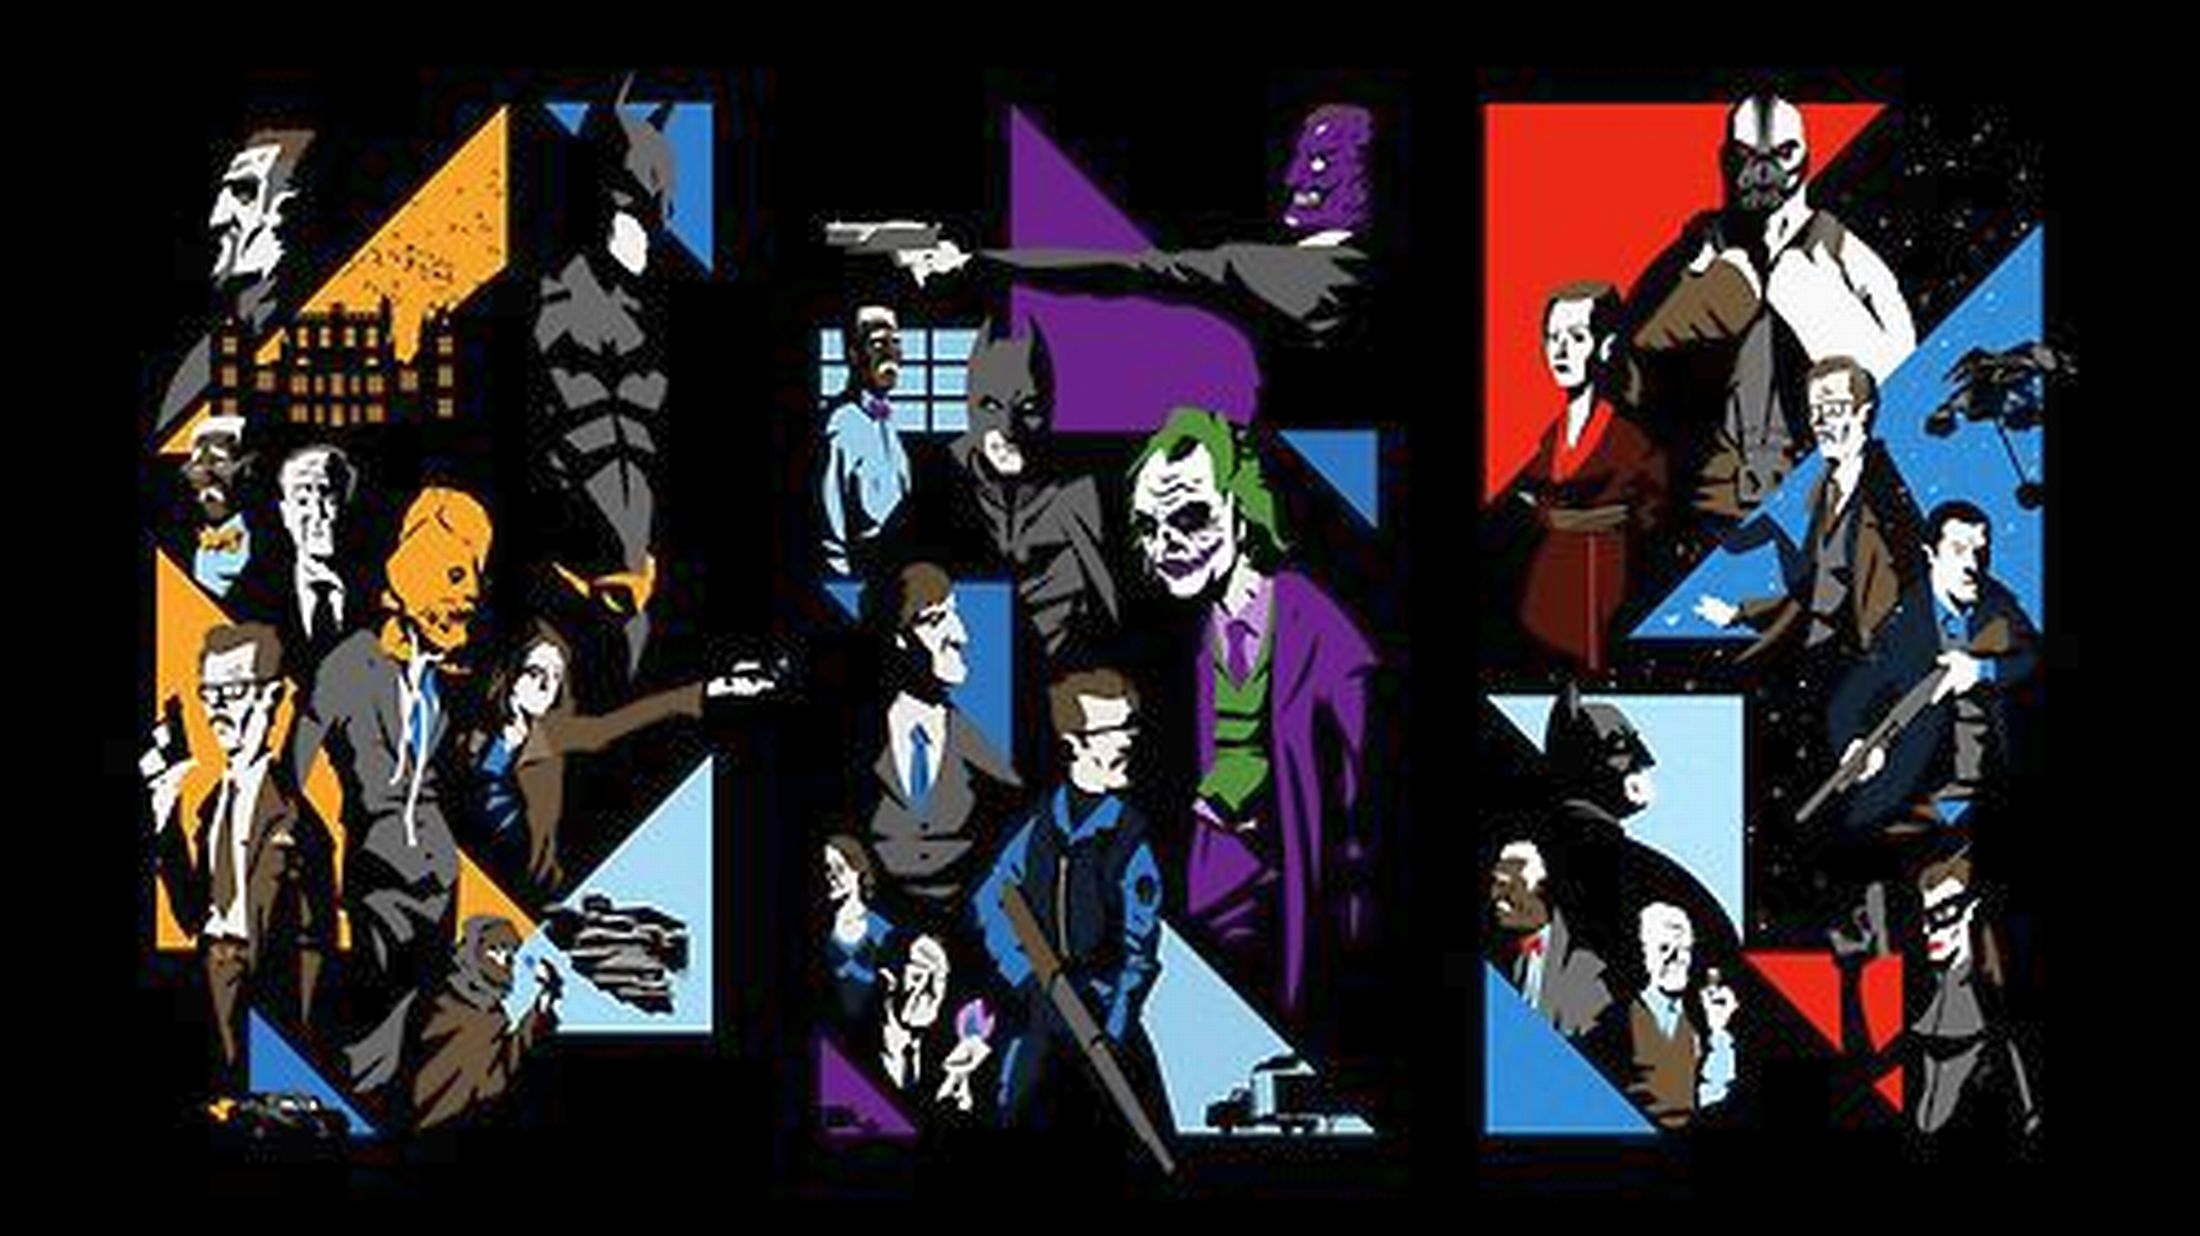 Nolan's Batman Trilogy HD Wallpapers